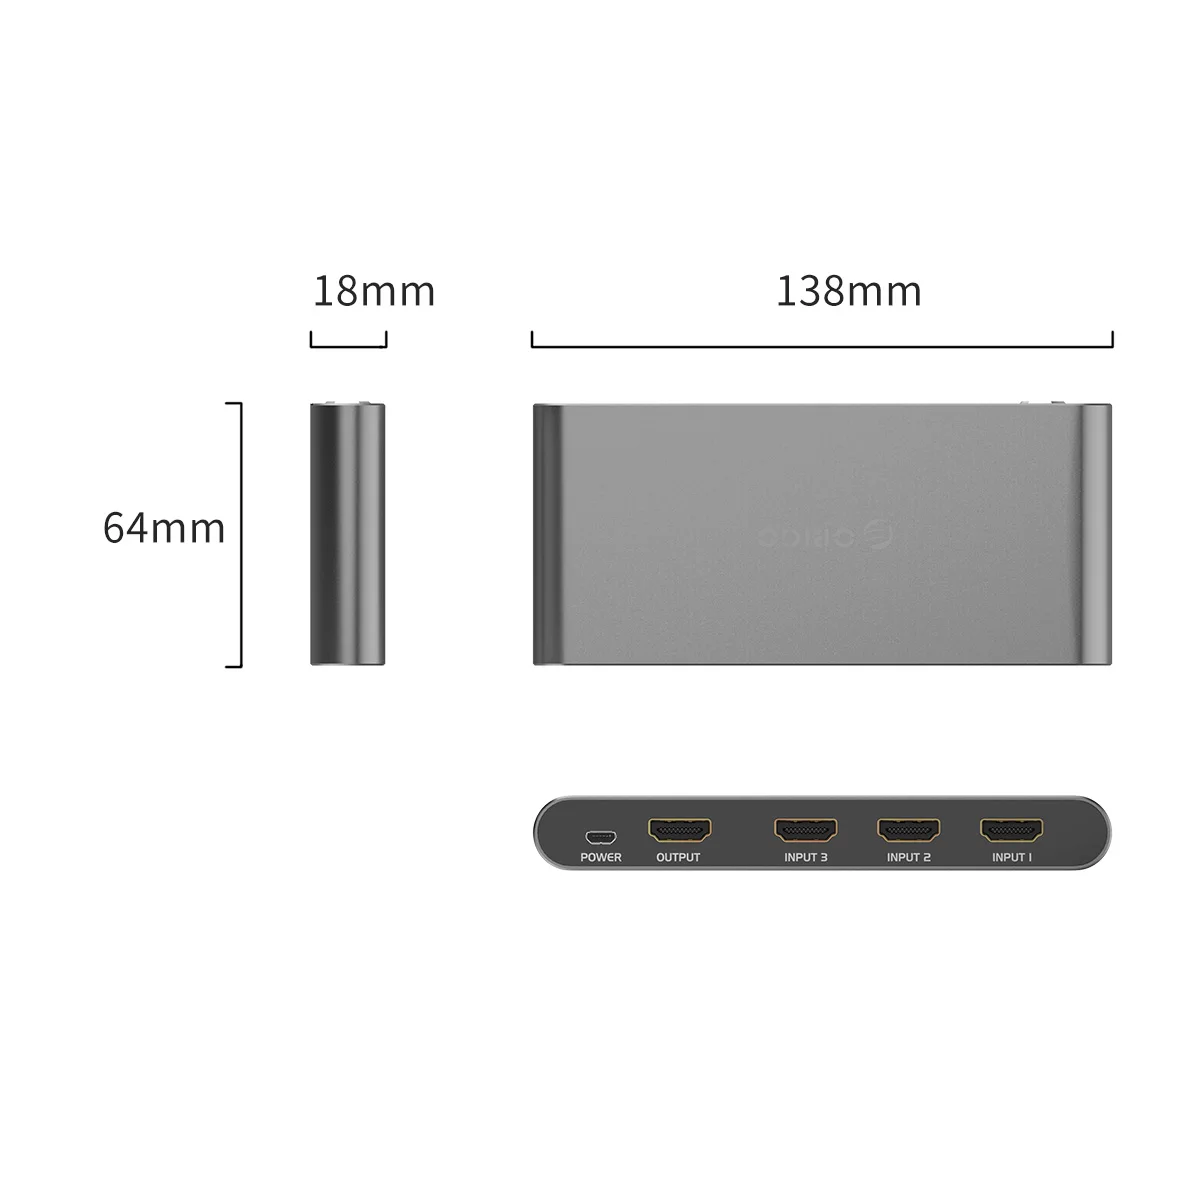 ORICO HDMI сплиттер переключатель 3 порта 4 к HD 1 к 3 порта HDMI коммутатор концентратор сплиттер инфракрасный пульт дистанционного управления для PS3 игр